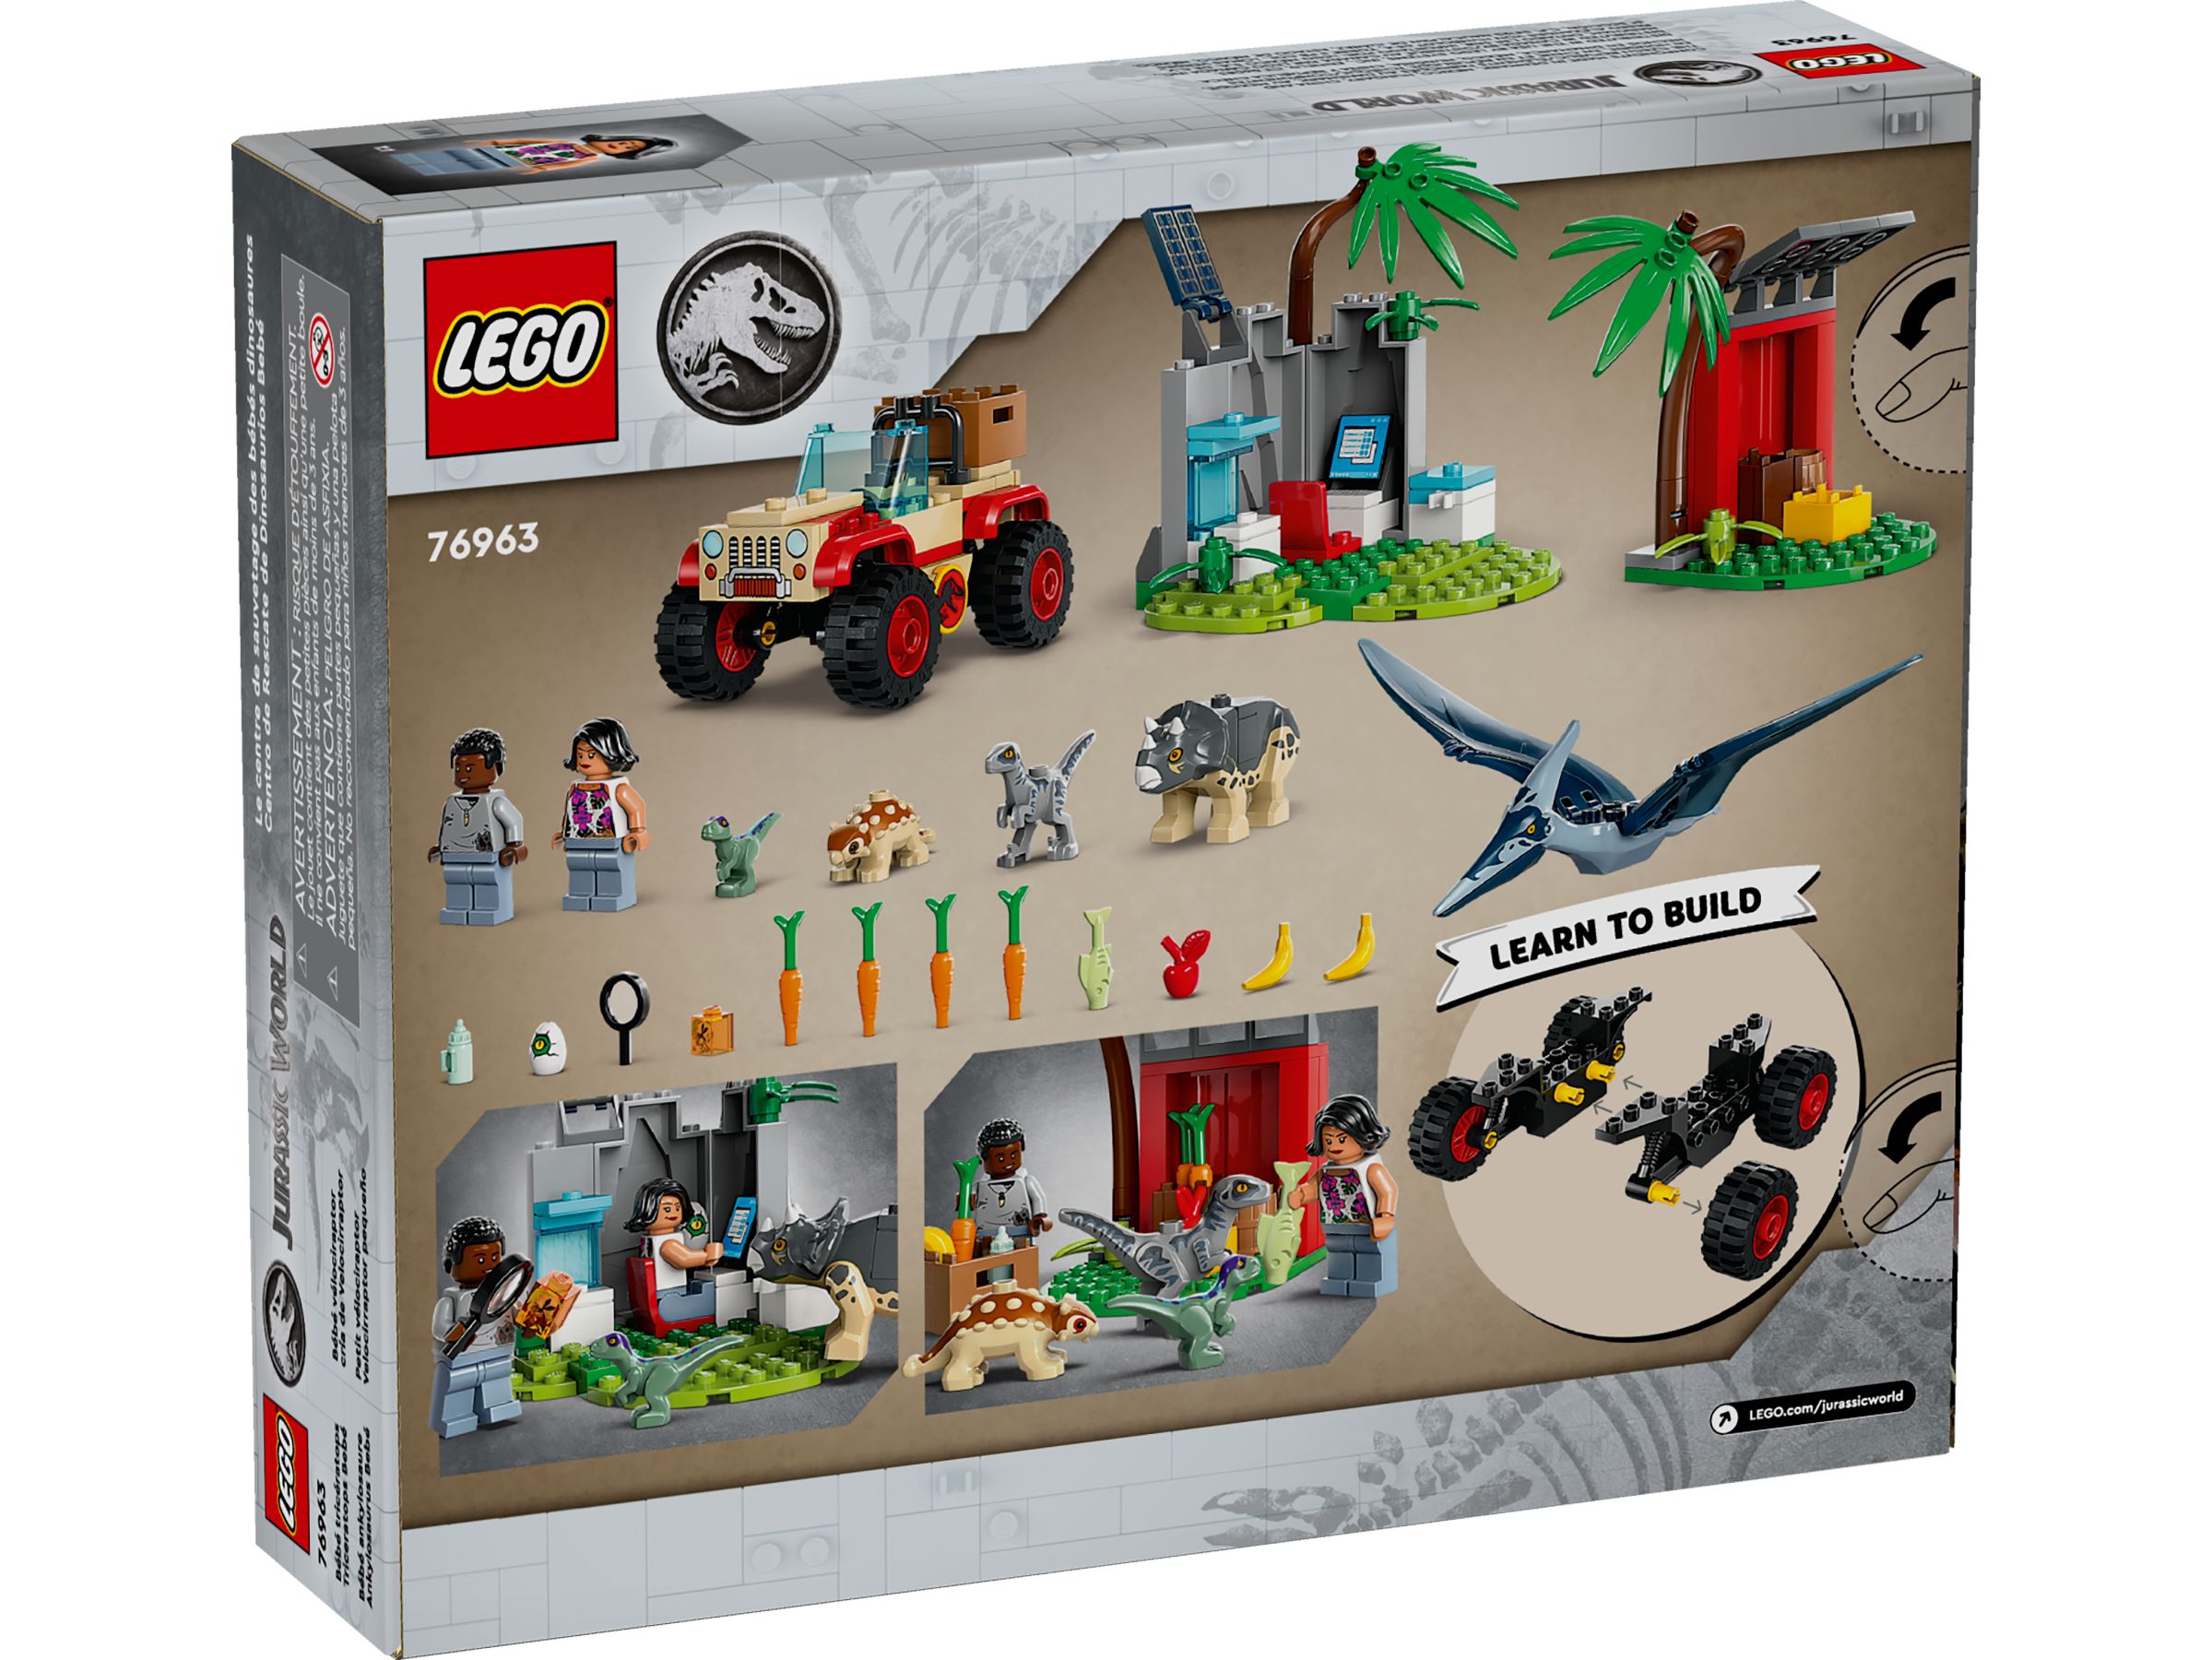 LEGO Jurassic World 76963 Rettungszentrum für Baby-Dinos LEGO_76963_alt2.jpg